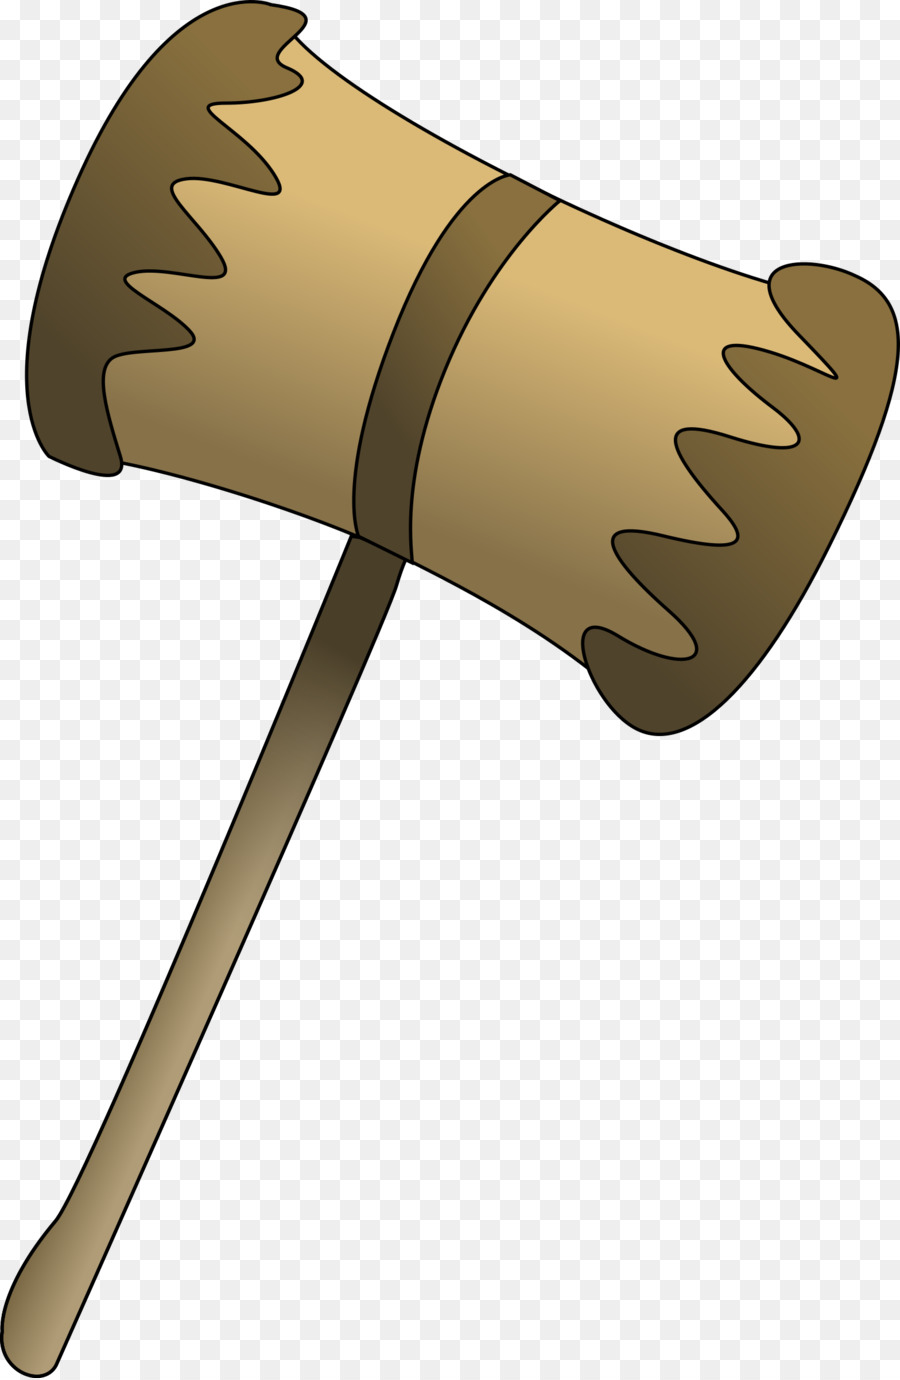 Mallet Hammer Gavel Clip art - hammer png download - 1568*2400 - Free Transparent Mallet png Download.